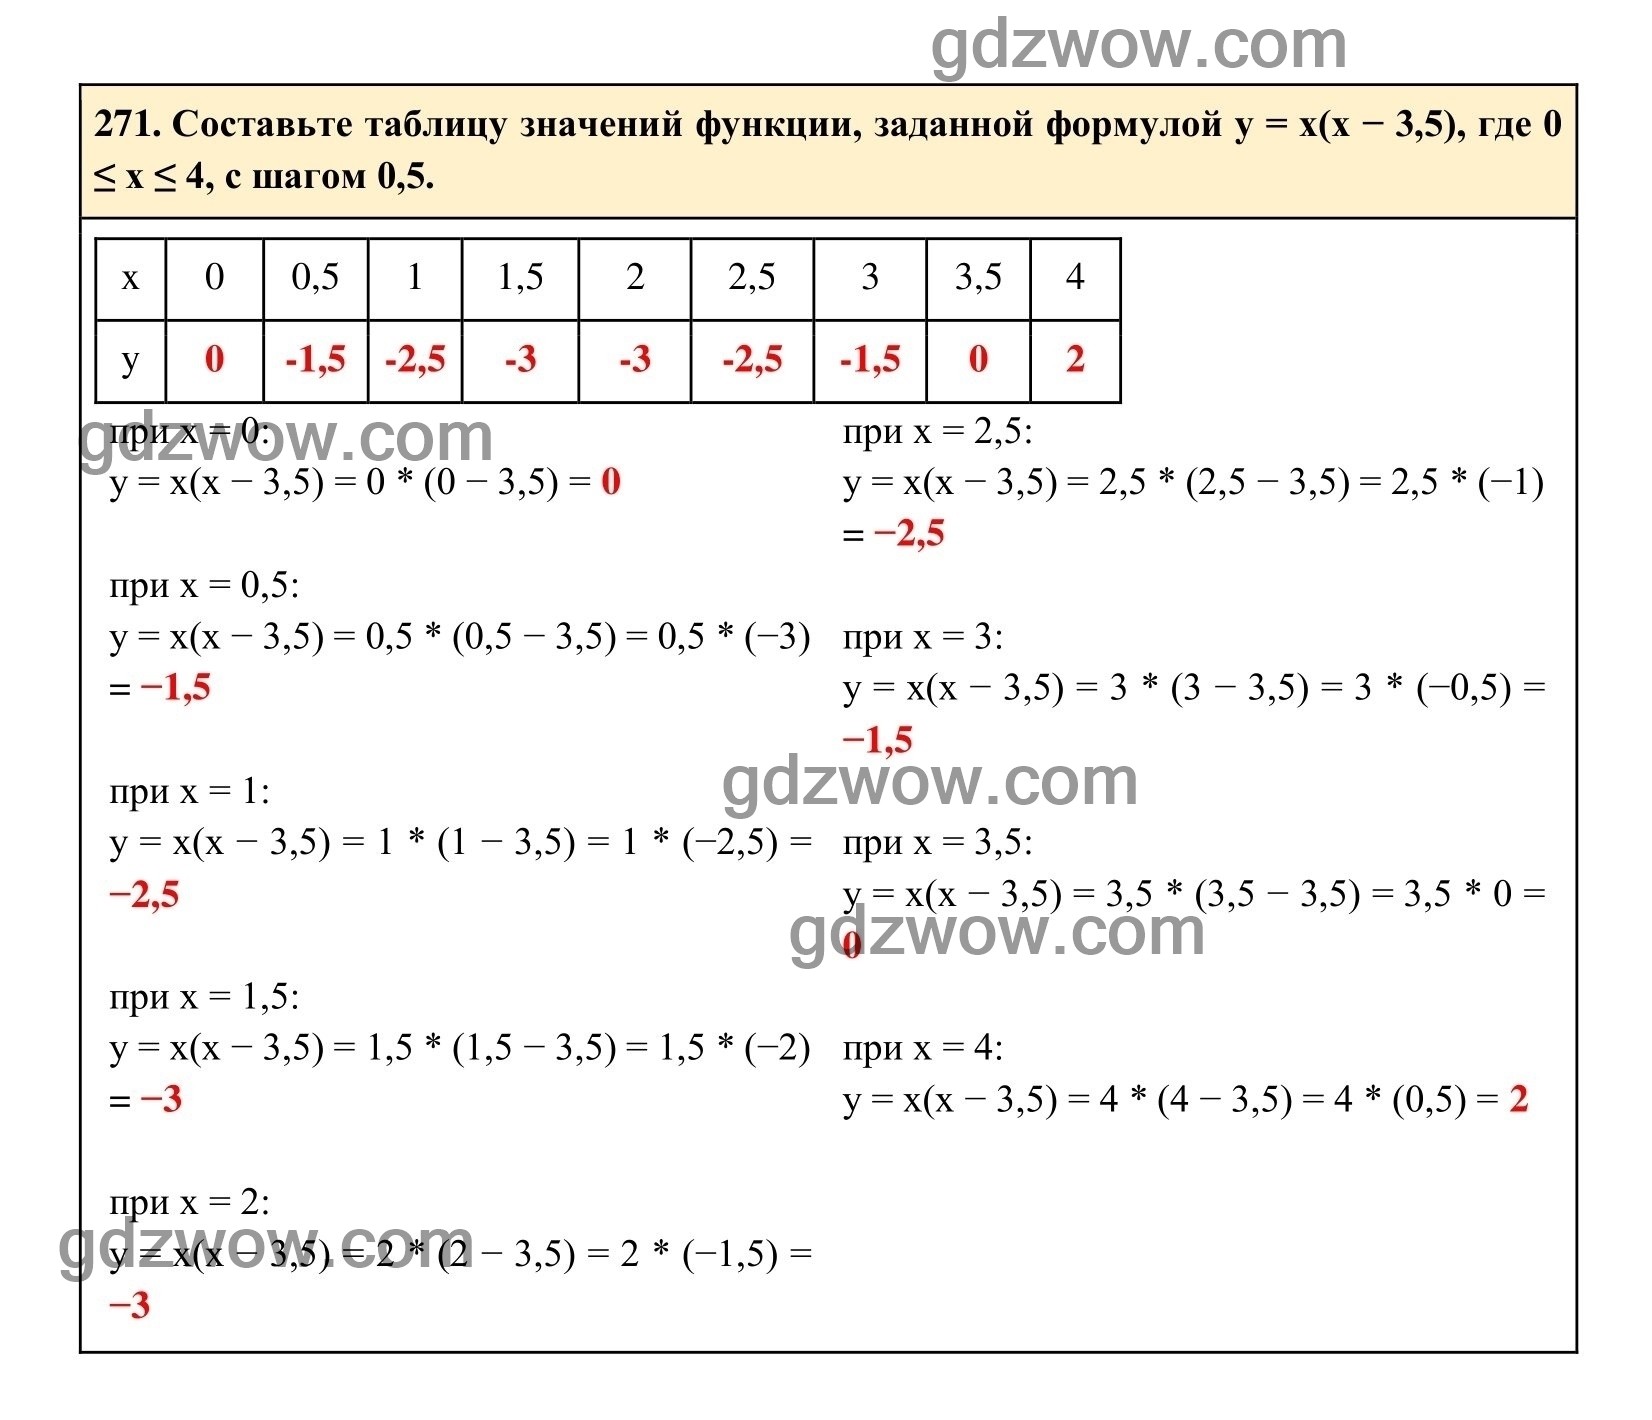 Упражнение 271 - ГДЗ по Алгебре 7 класс Учебник Макарычев (решебник) - GDZwow